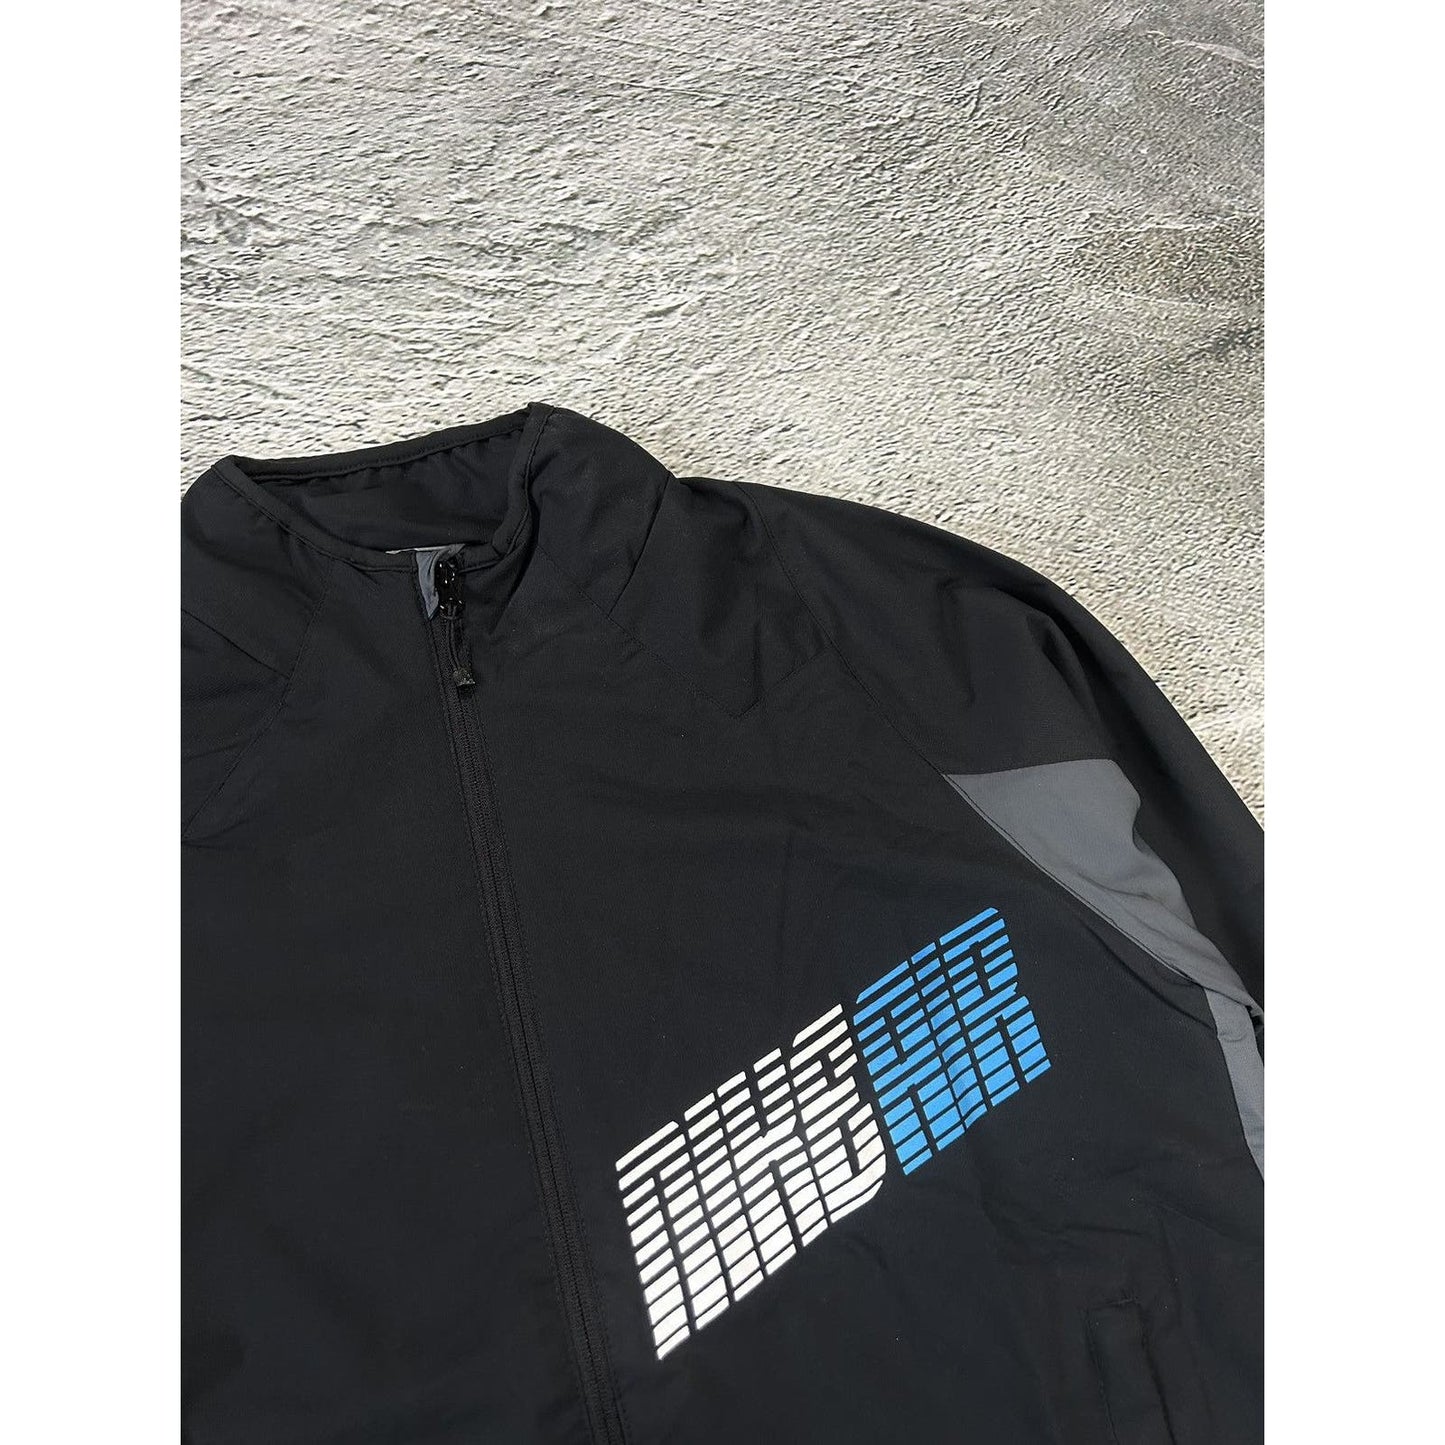 Nike Air vintage track suit black grey blue 2000s